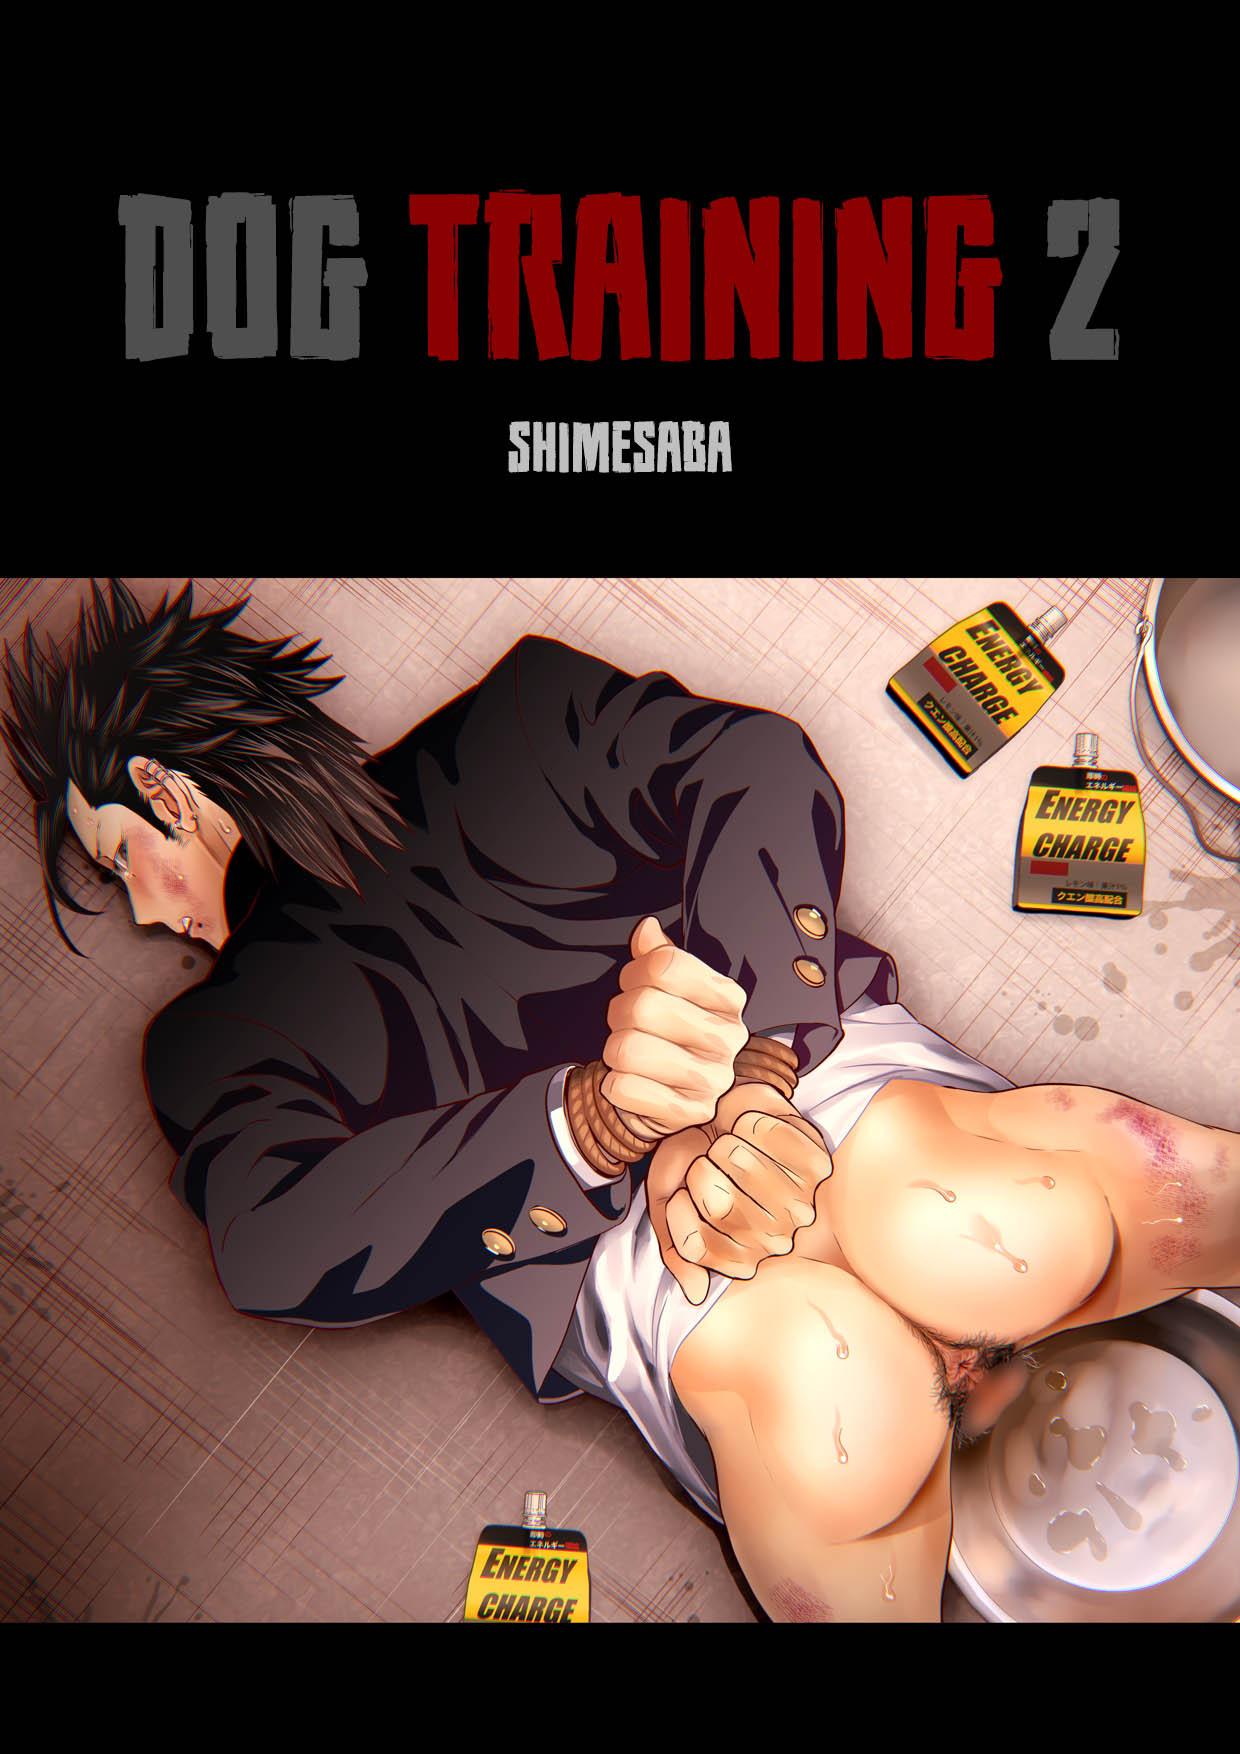 Dog Training 2 0